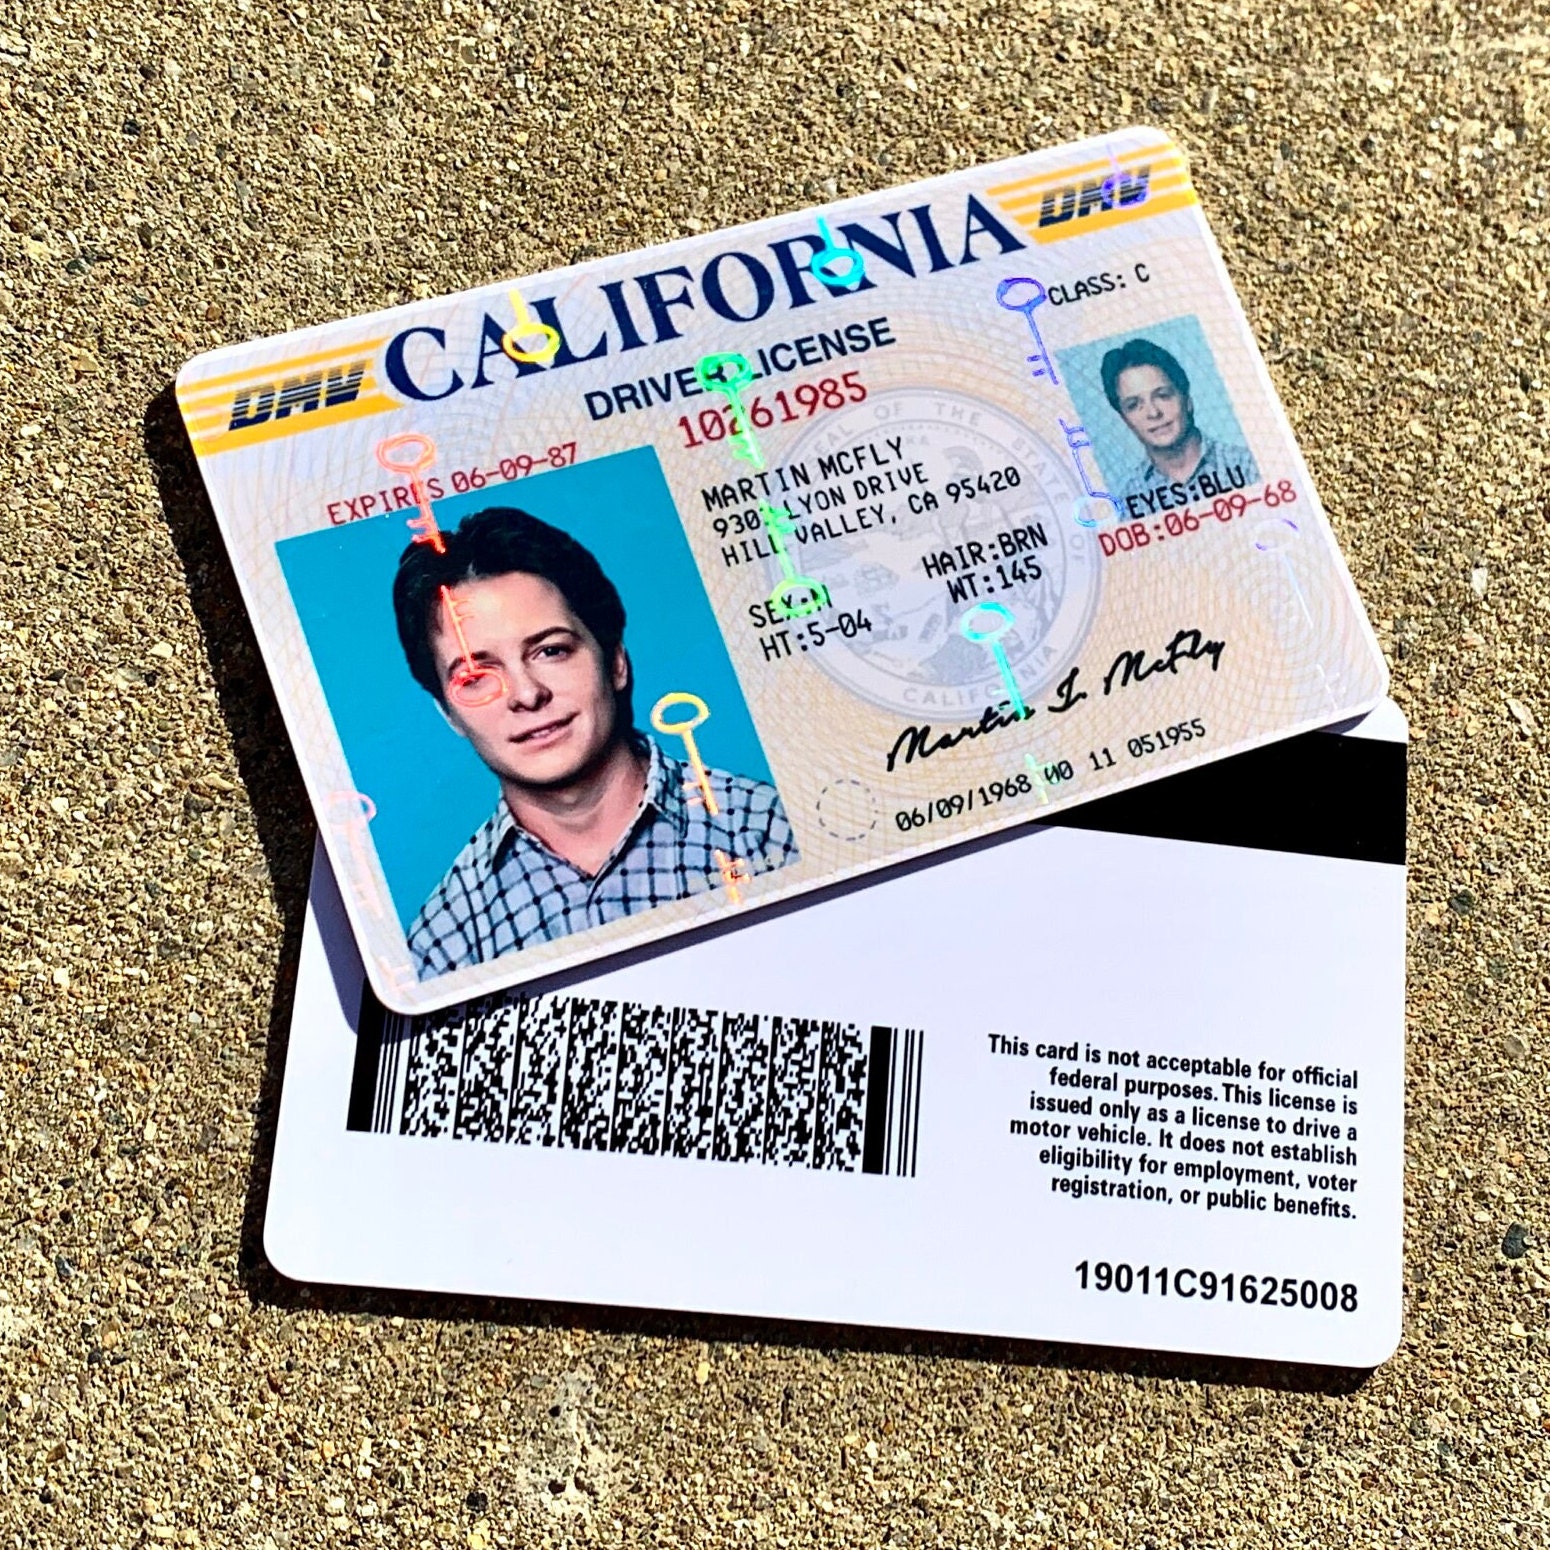 scannable fake id